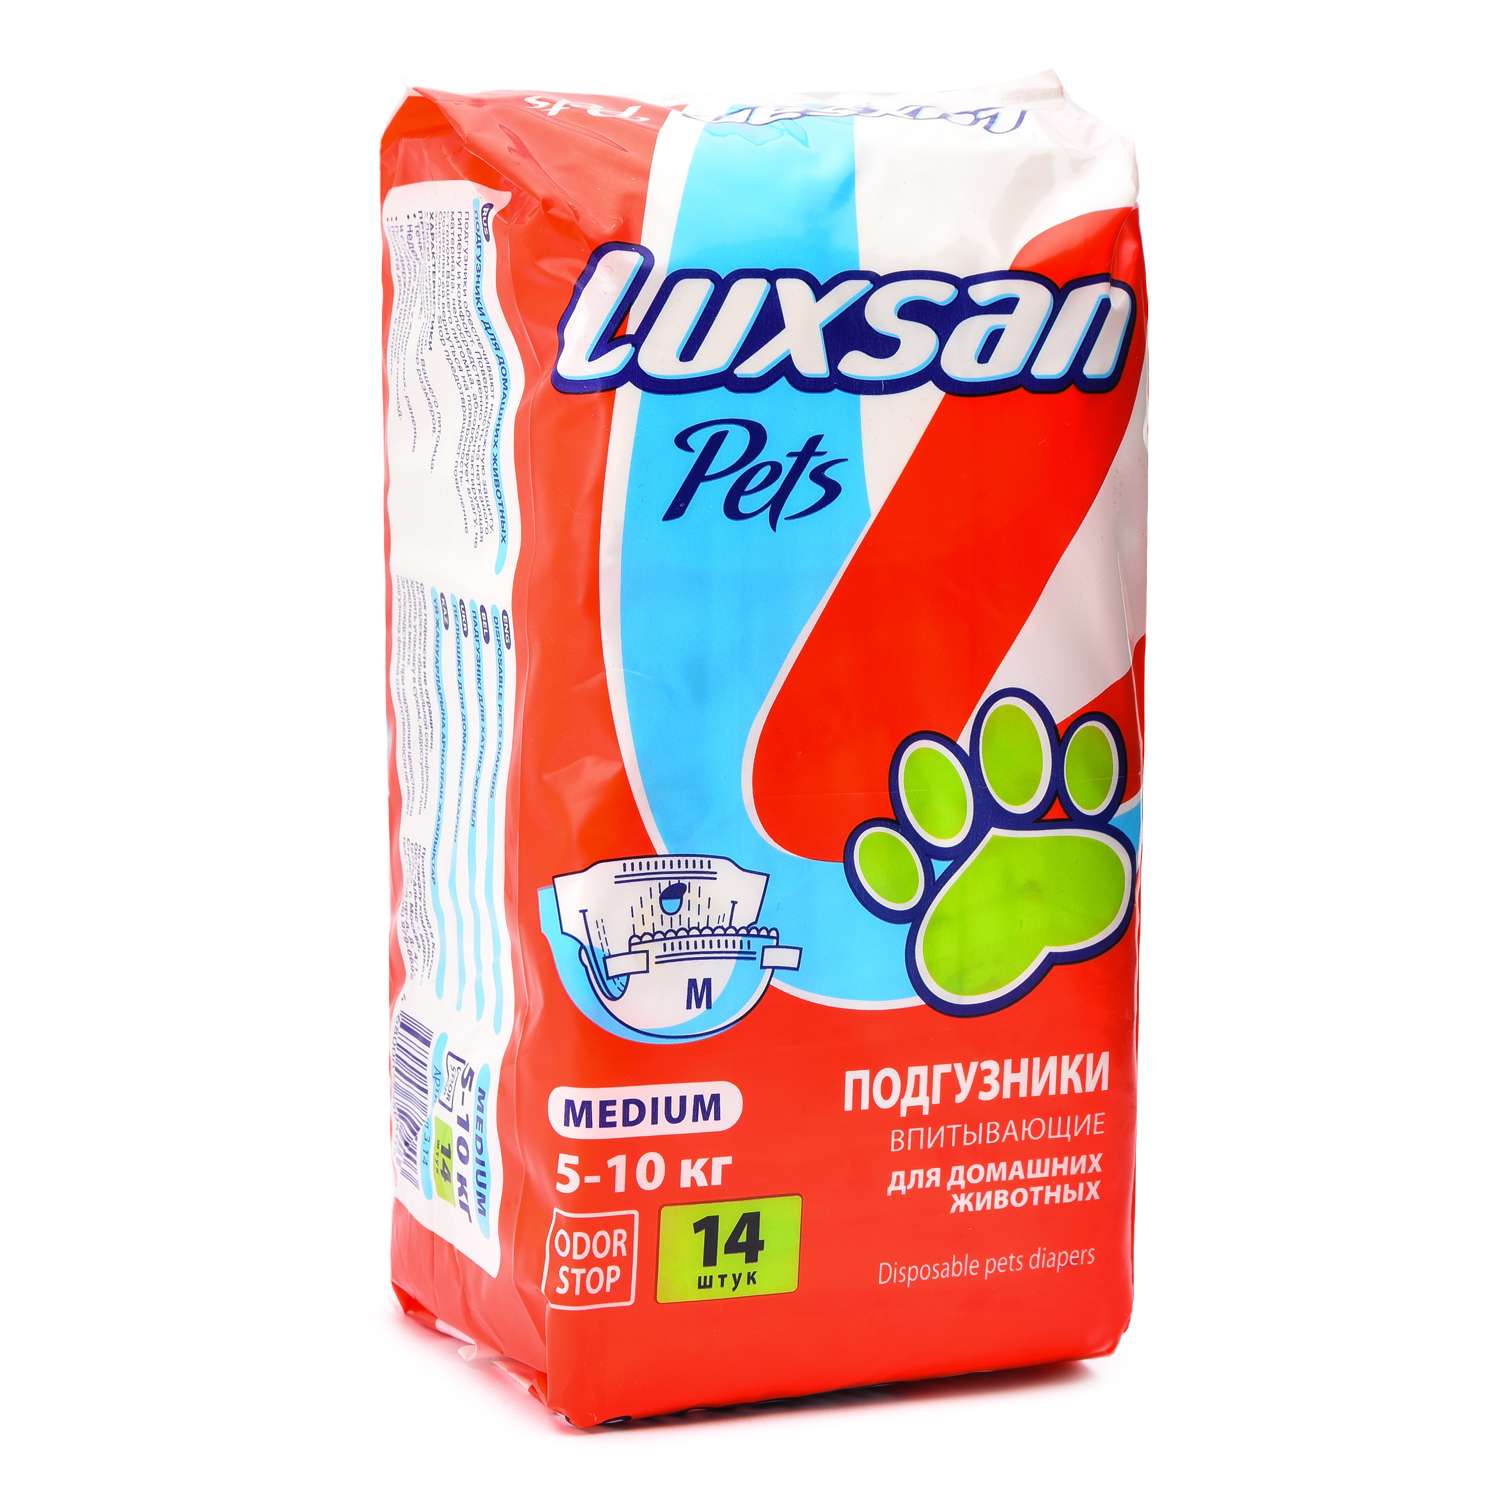 Подгузники для животных Luxsan Pets впитывающие M 5-10кг 14шт - фото 1